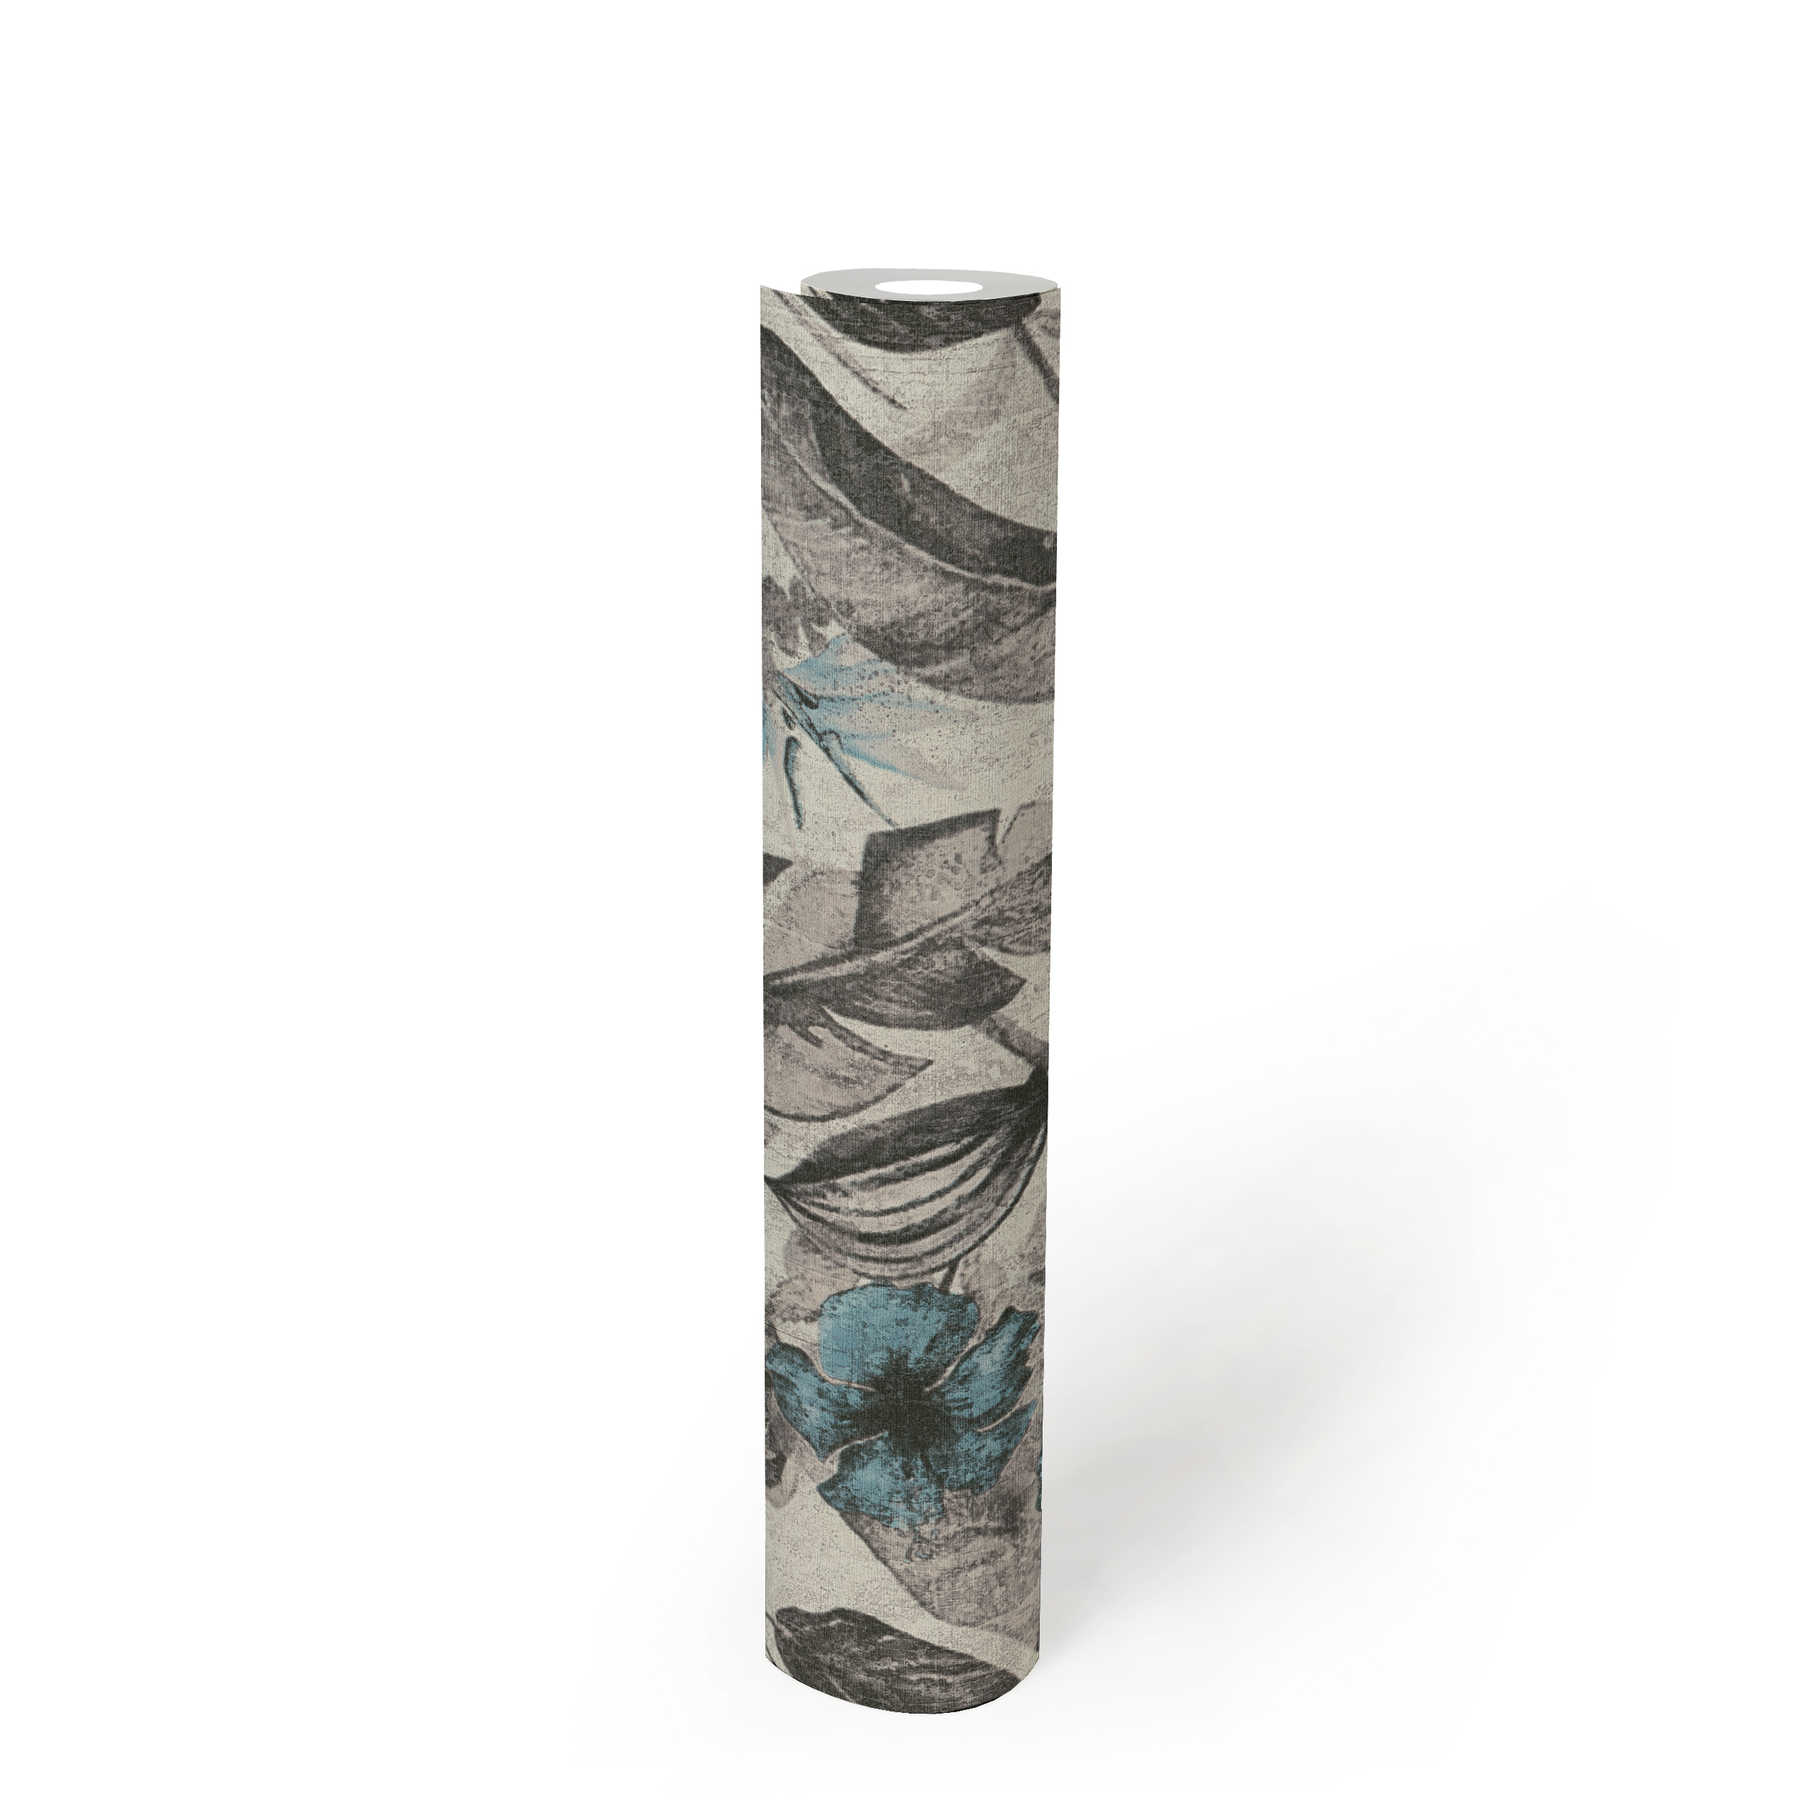             Papier peint motif fleurs tropicales aspect textile - bleu, gris, noir
        